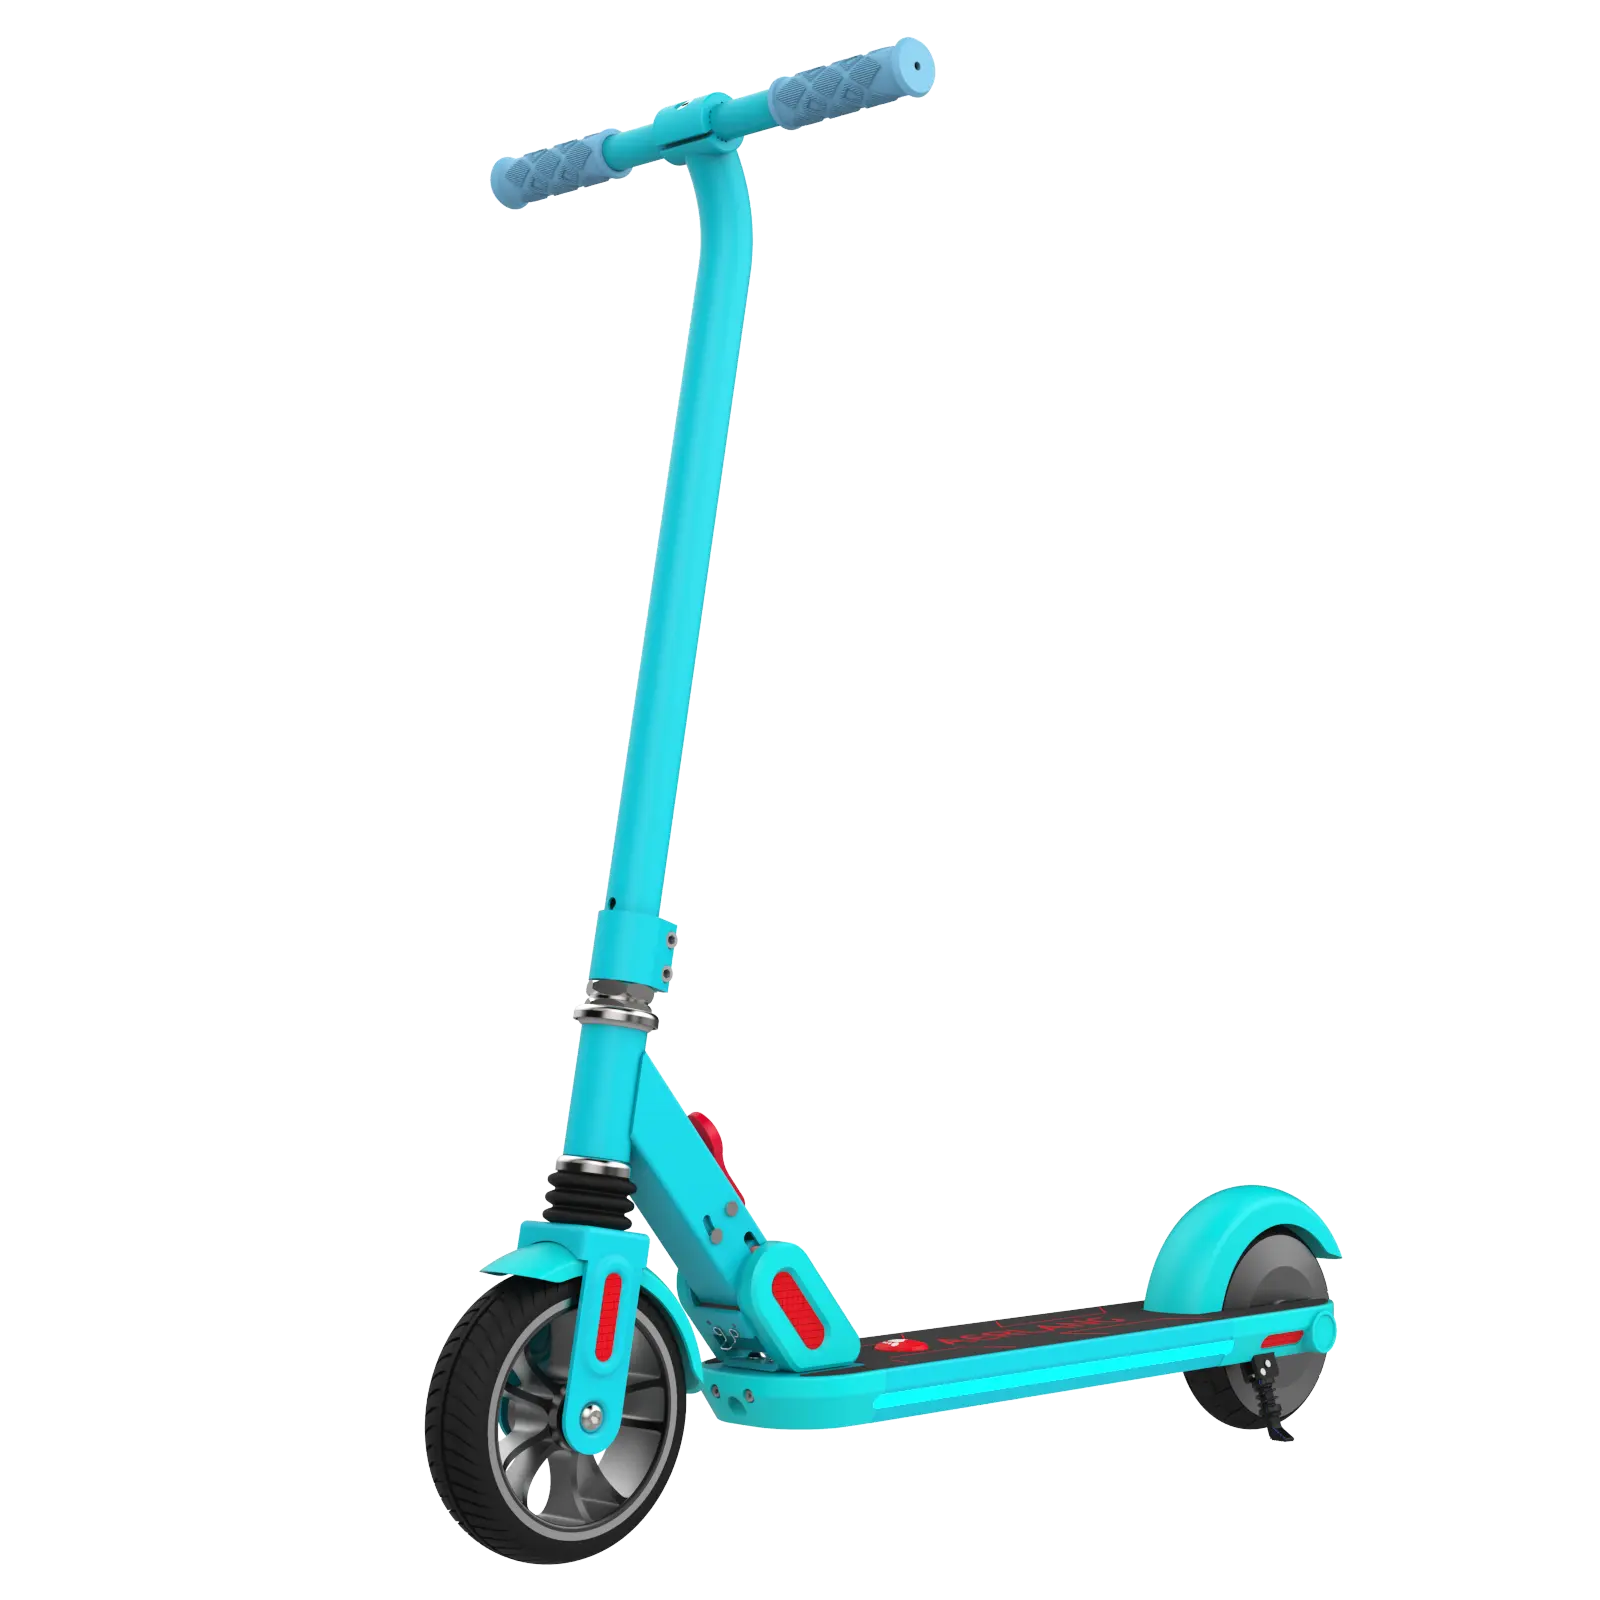 Kaliteli iki tekerlek katlanır Kick elektrikli Scooter arka fren elektrikli bisikletler çocuklar için